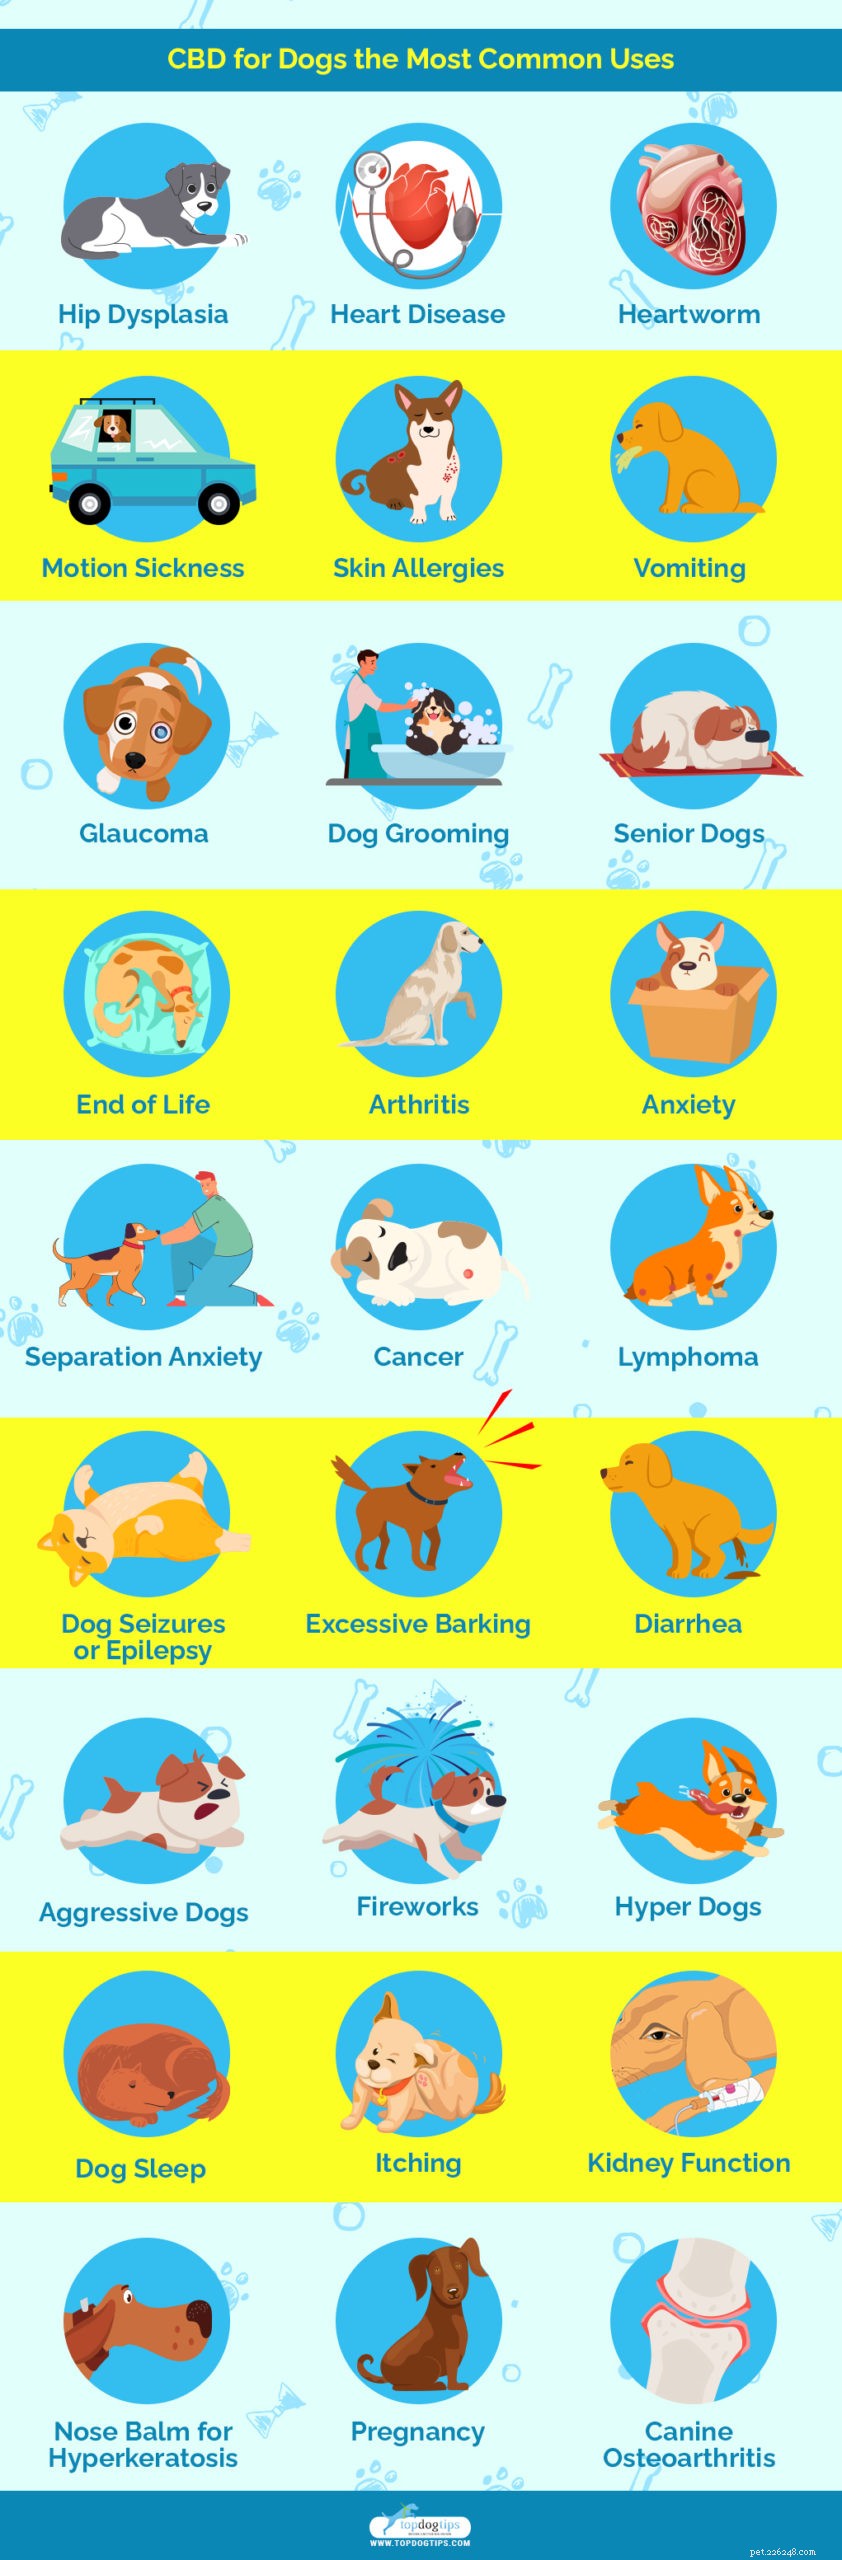 25 avantages pour la santé et utilisations du CBD pour les chiens